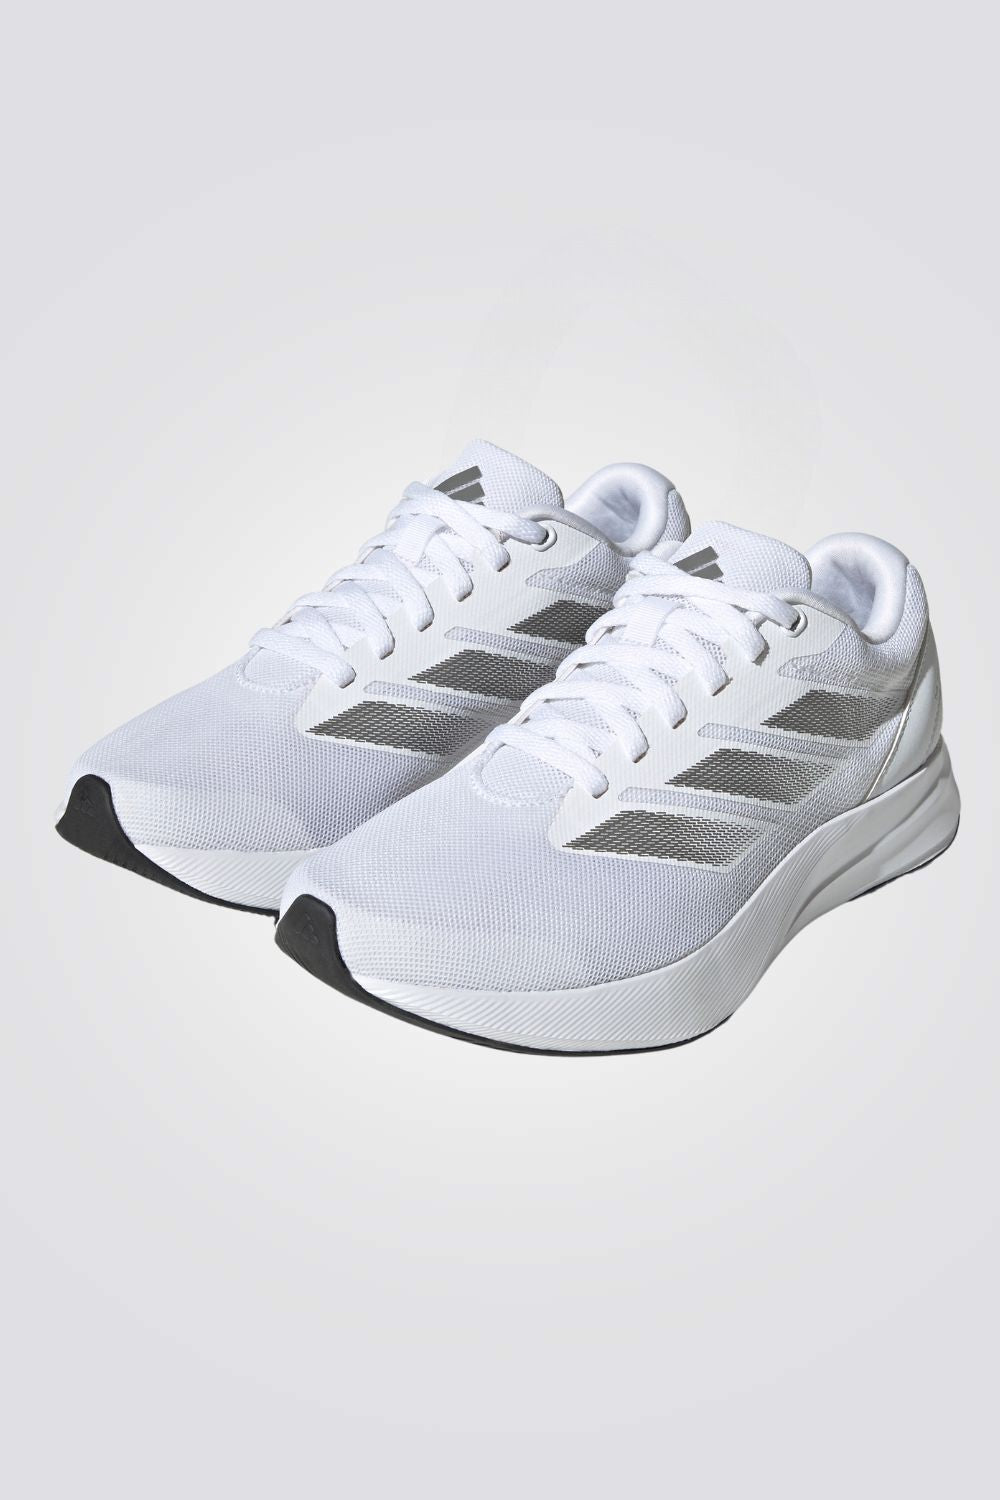 נעלי ספורט לנשים DURAMO RC בצבע לבן ואפור